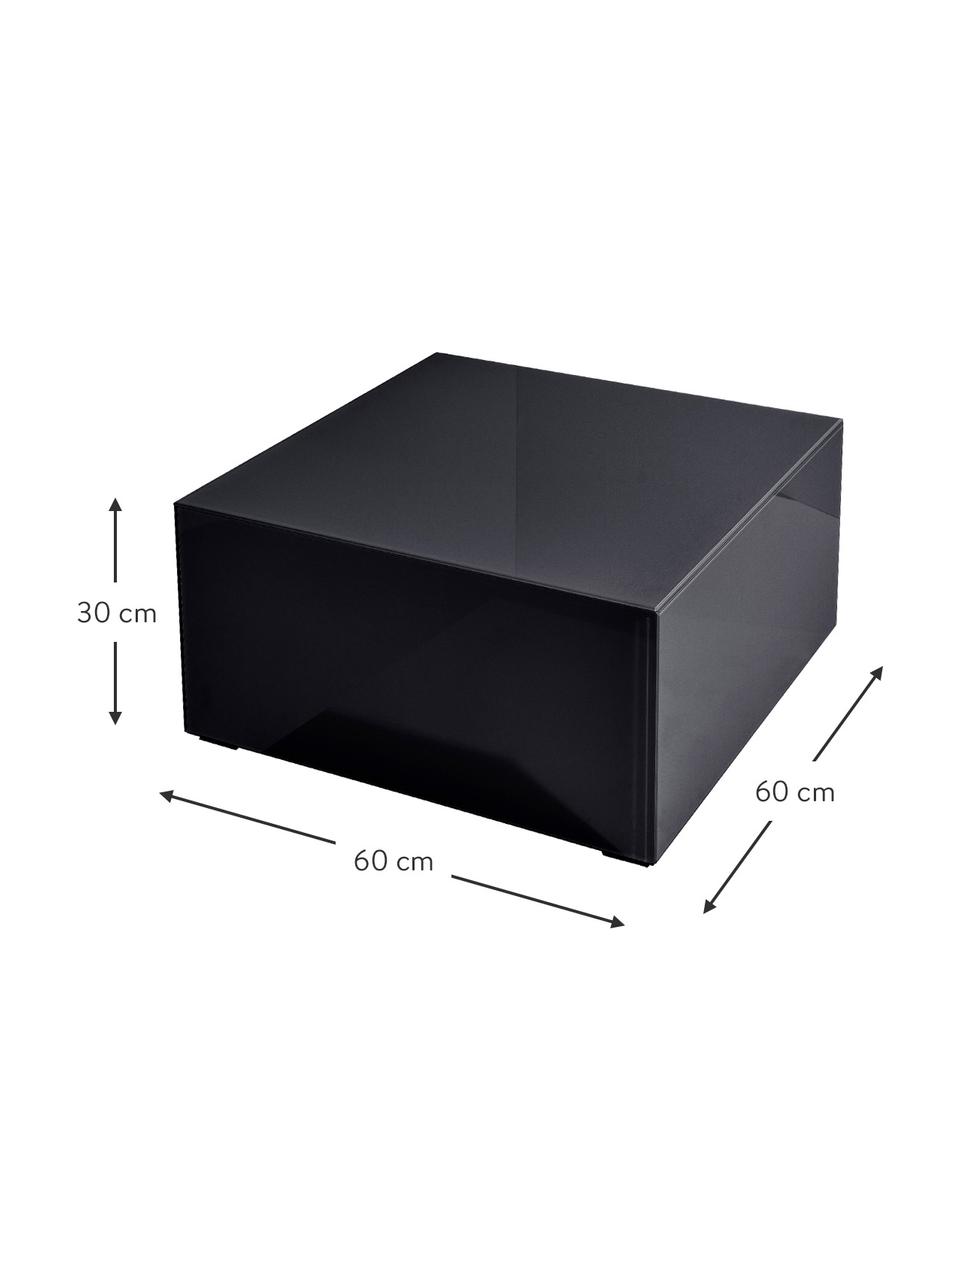 Konferenční stolek se zrcadlovým efektem Pop, MDF deska (dřevovláknitá deska střední hustoty), certifikace FSC, barevné sklo, Černá, Š 60 cm, V 30 cm